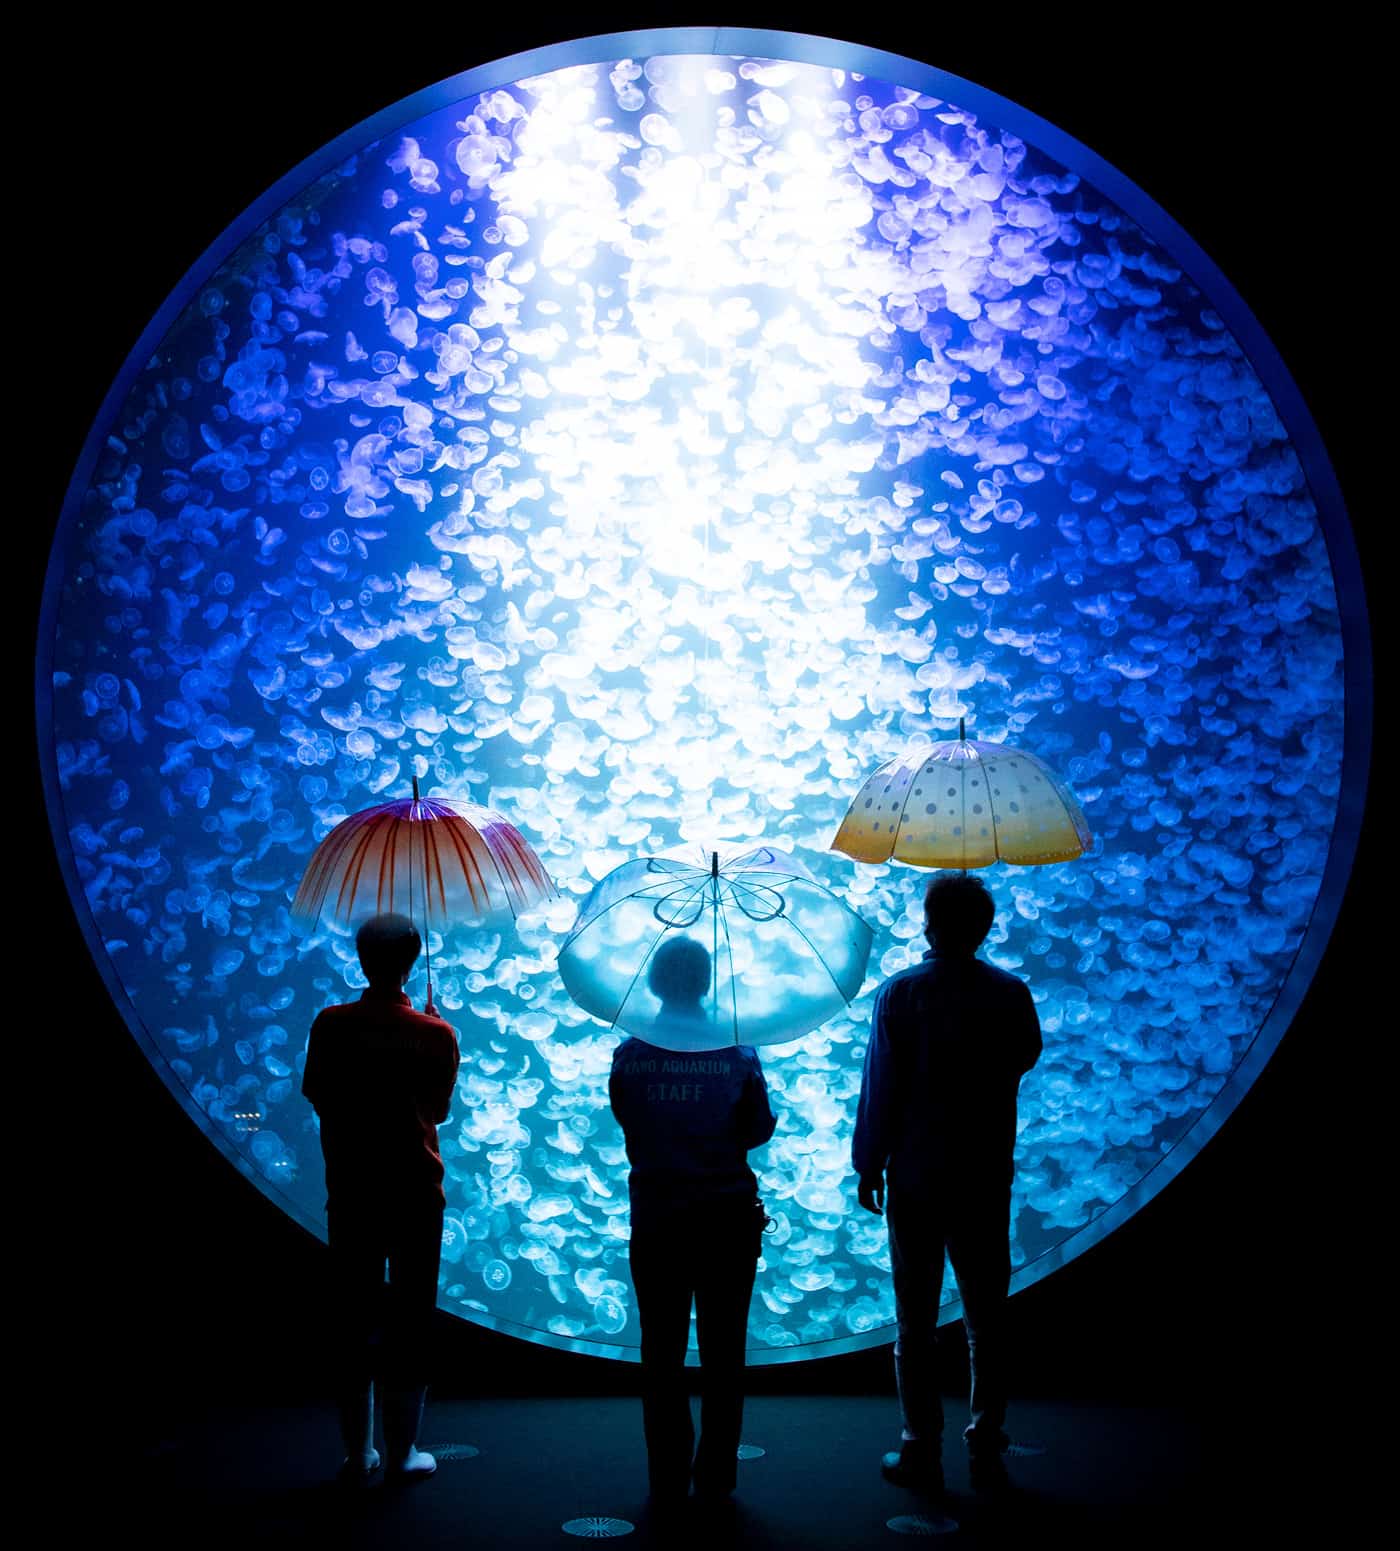 ร่มแมงกะพรุนของ Kamo Aquarium ในคอนเซ็ปต์ 雨空を泳ぐ～の傘 แมงกะพรุนแหวกว่ายท่ามกลางท้องฟ้าแห่งสายฝน